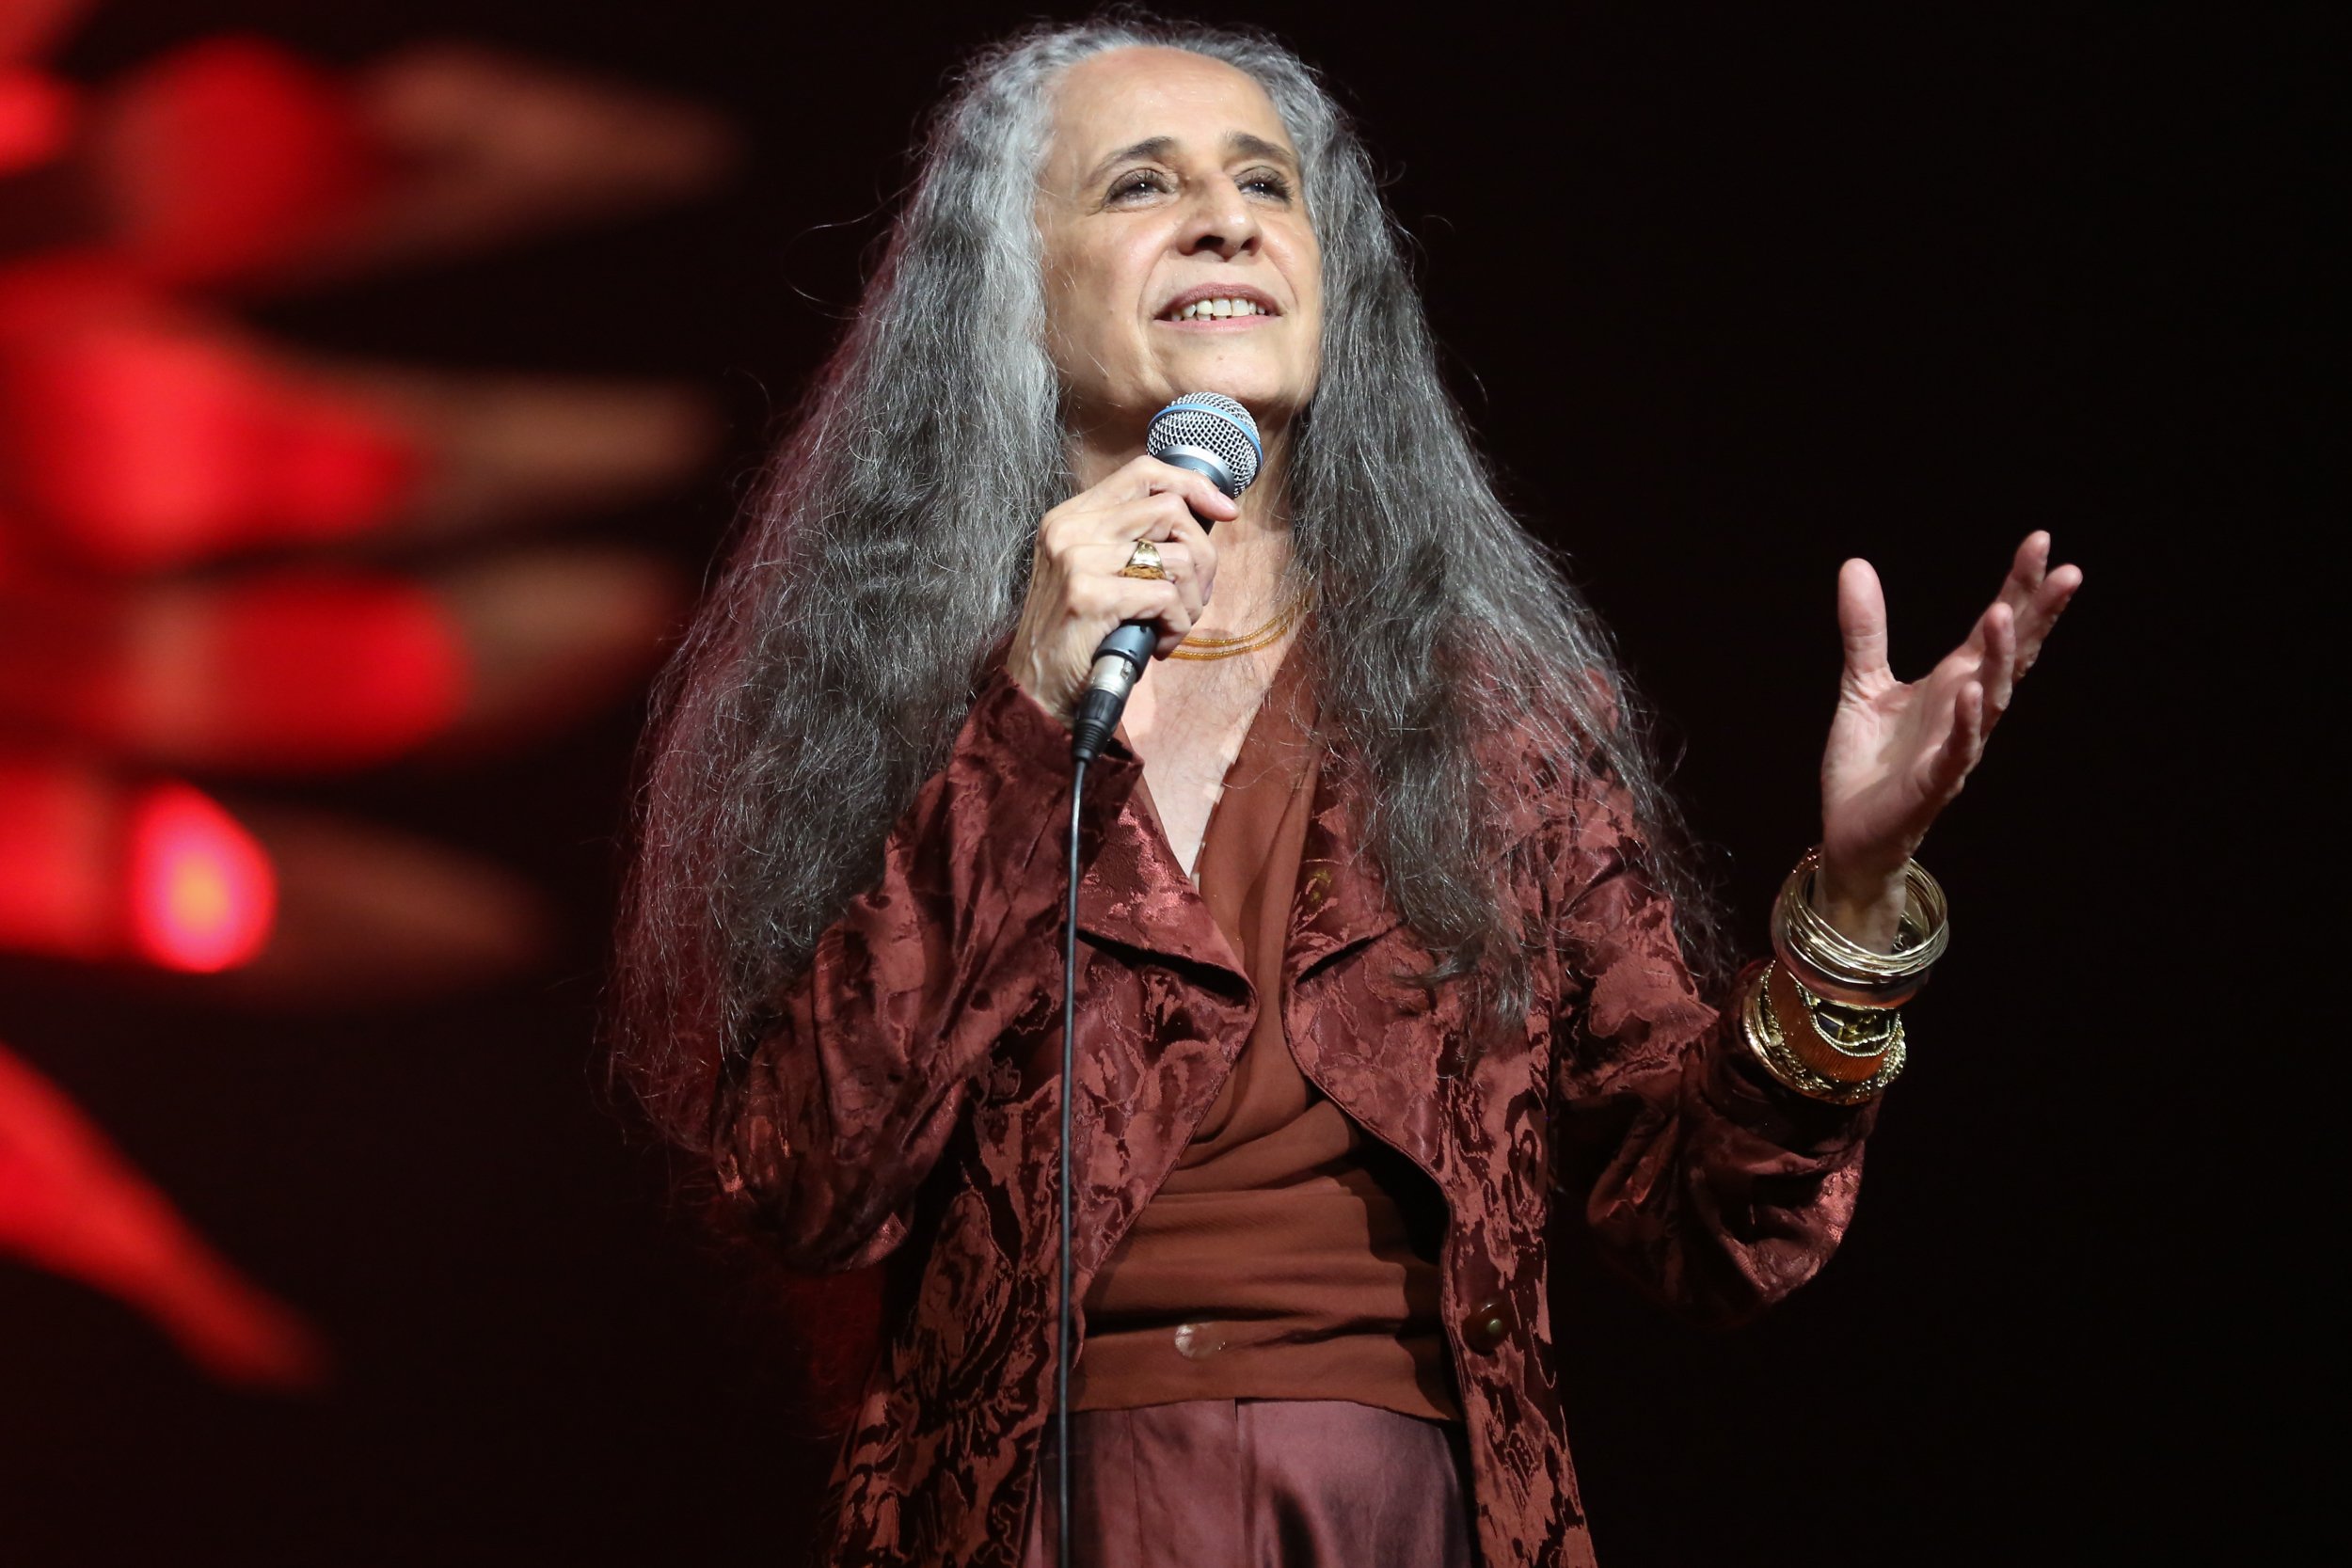 Maria Bethânia no palco cantando